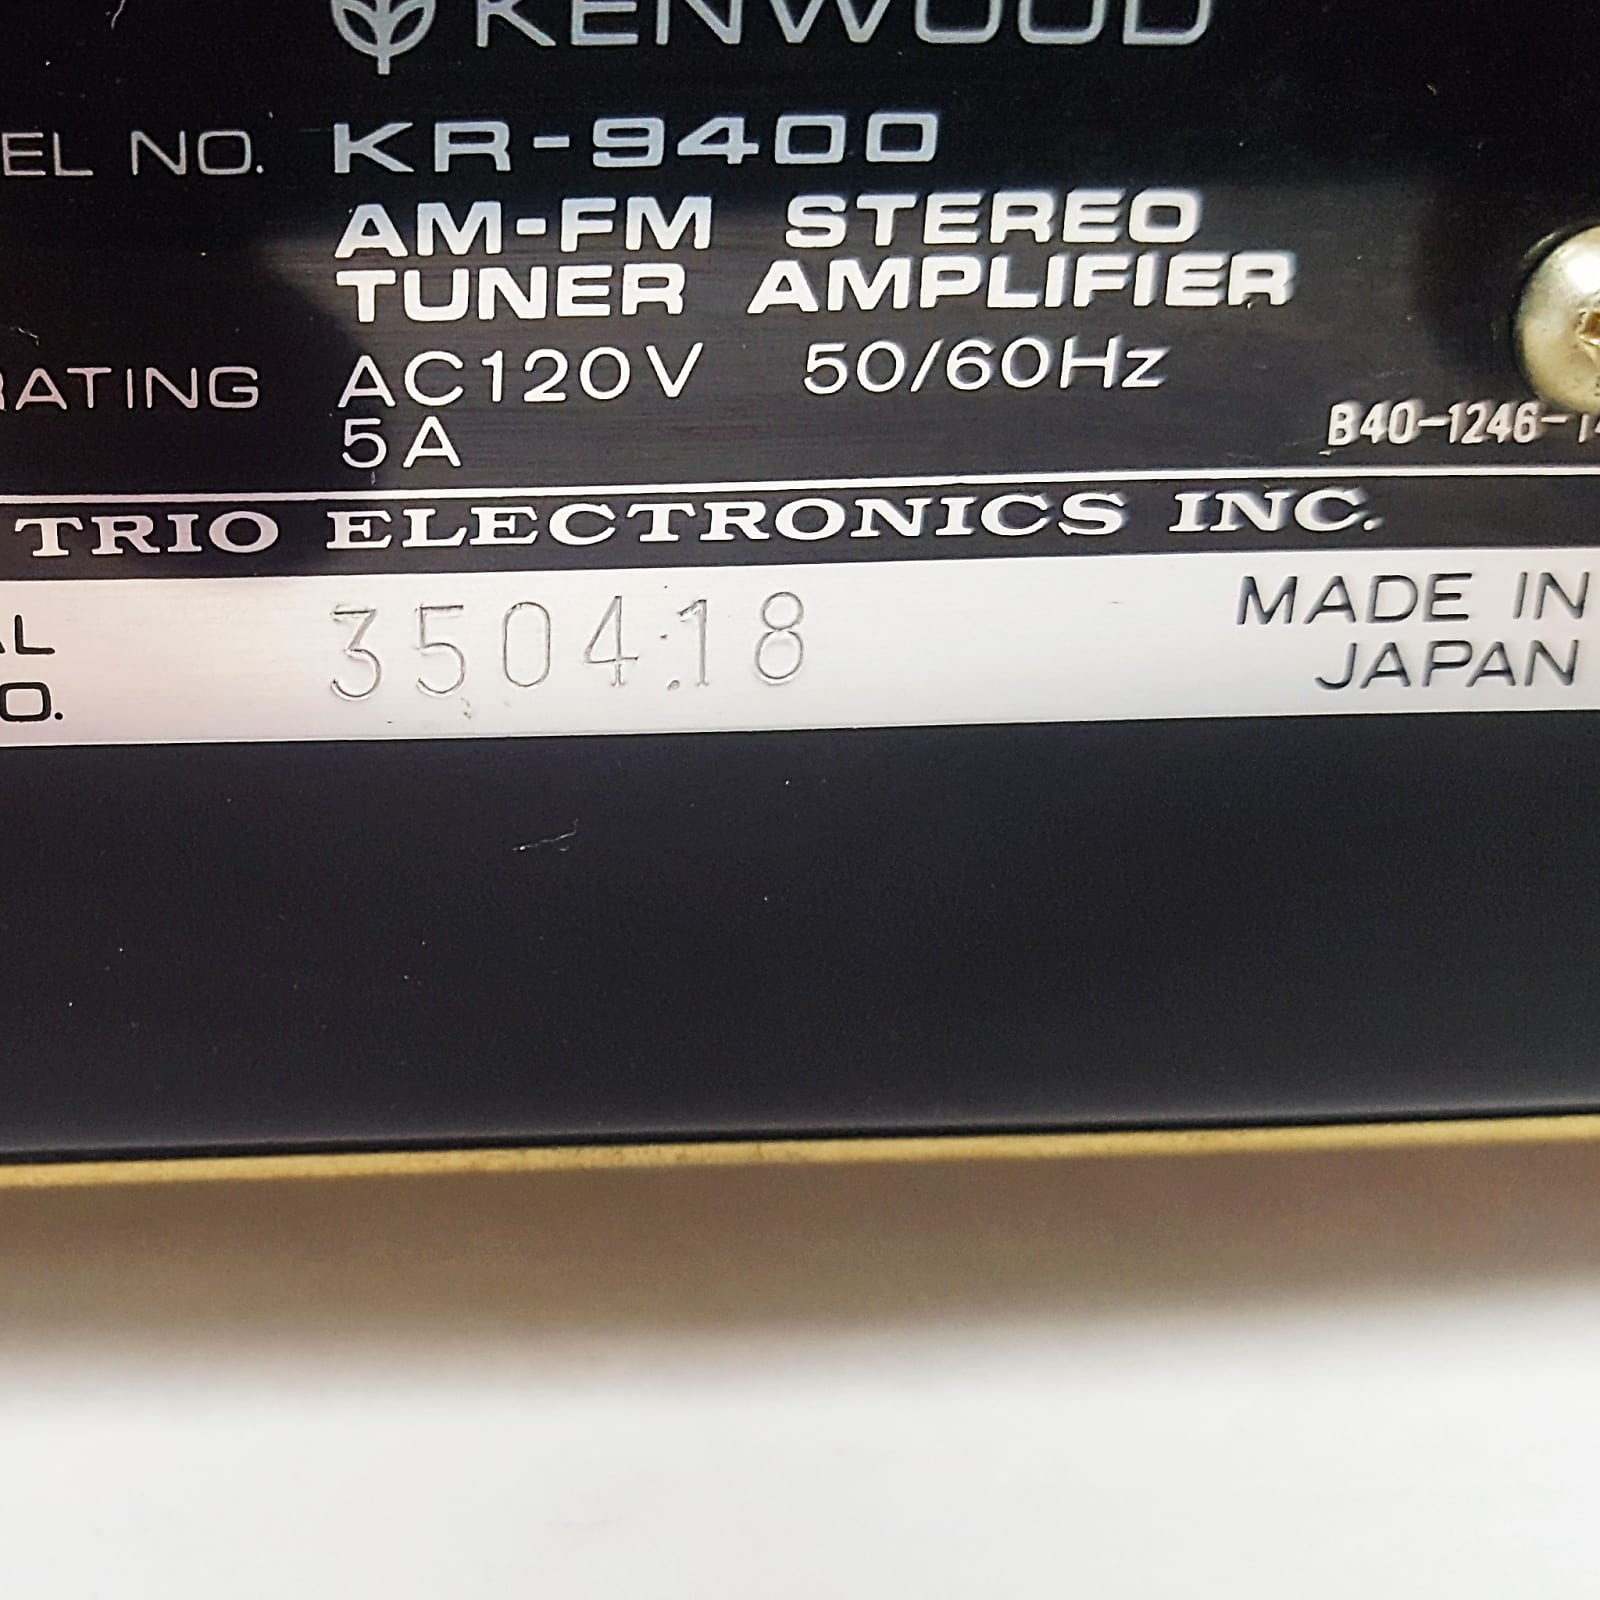 Kenwood KR-9400 Vintage Receiver w/ LED Upgrade, Cleaned, Original Box & Manual